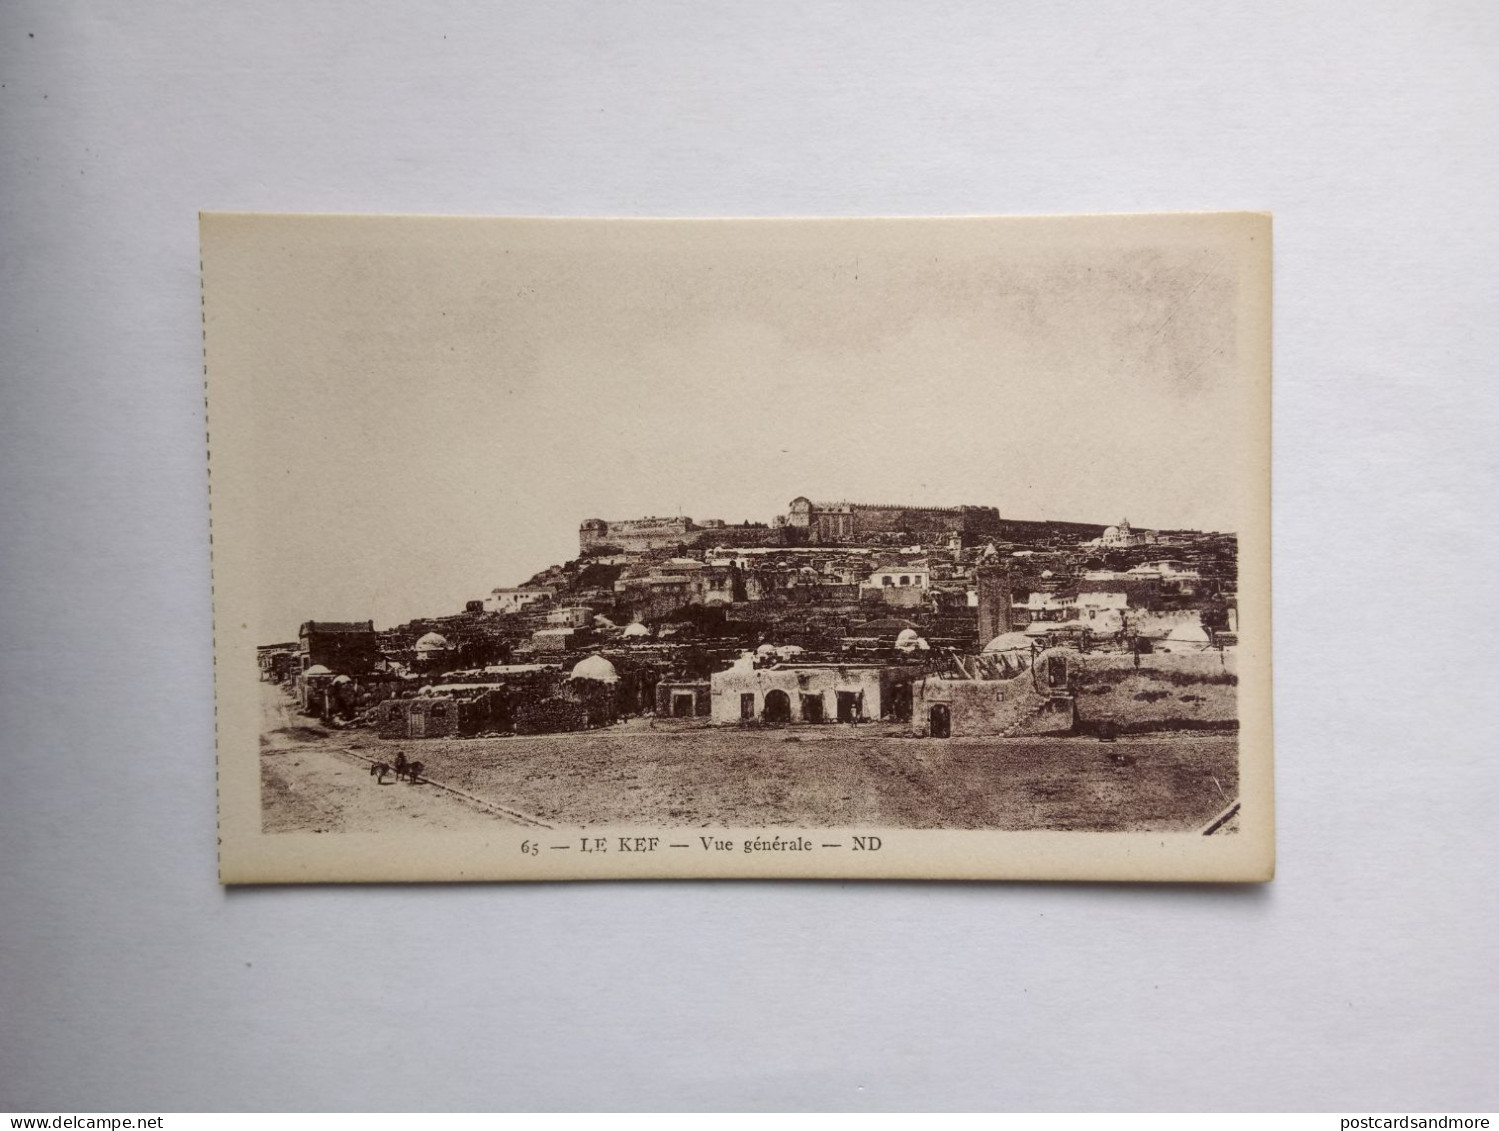 Tunisia Lot of 38 unused postcards Lévy et Neurdein Réunis ca. 1925